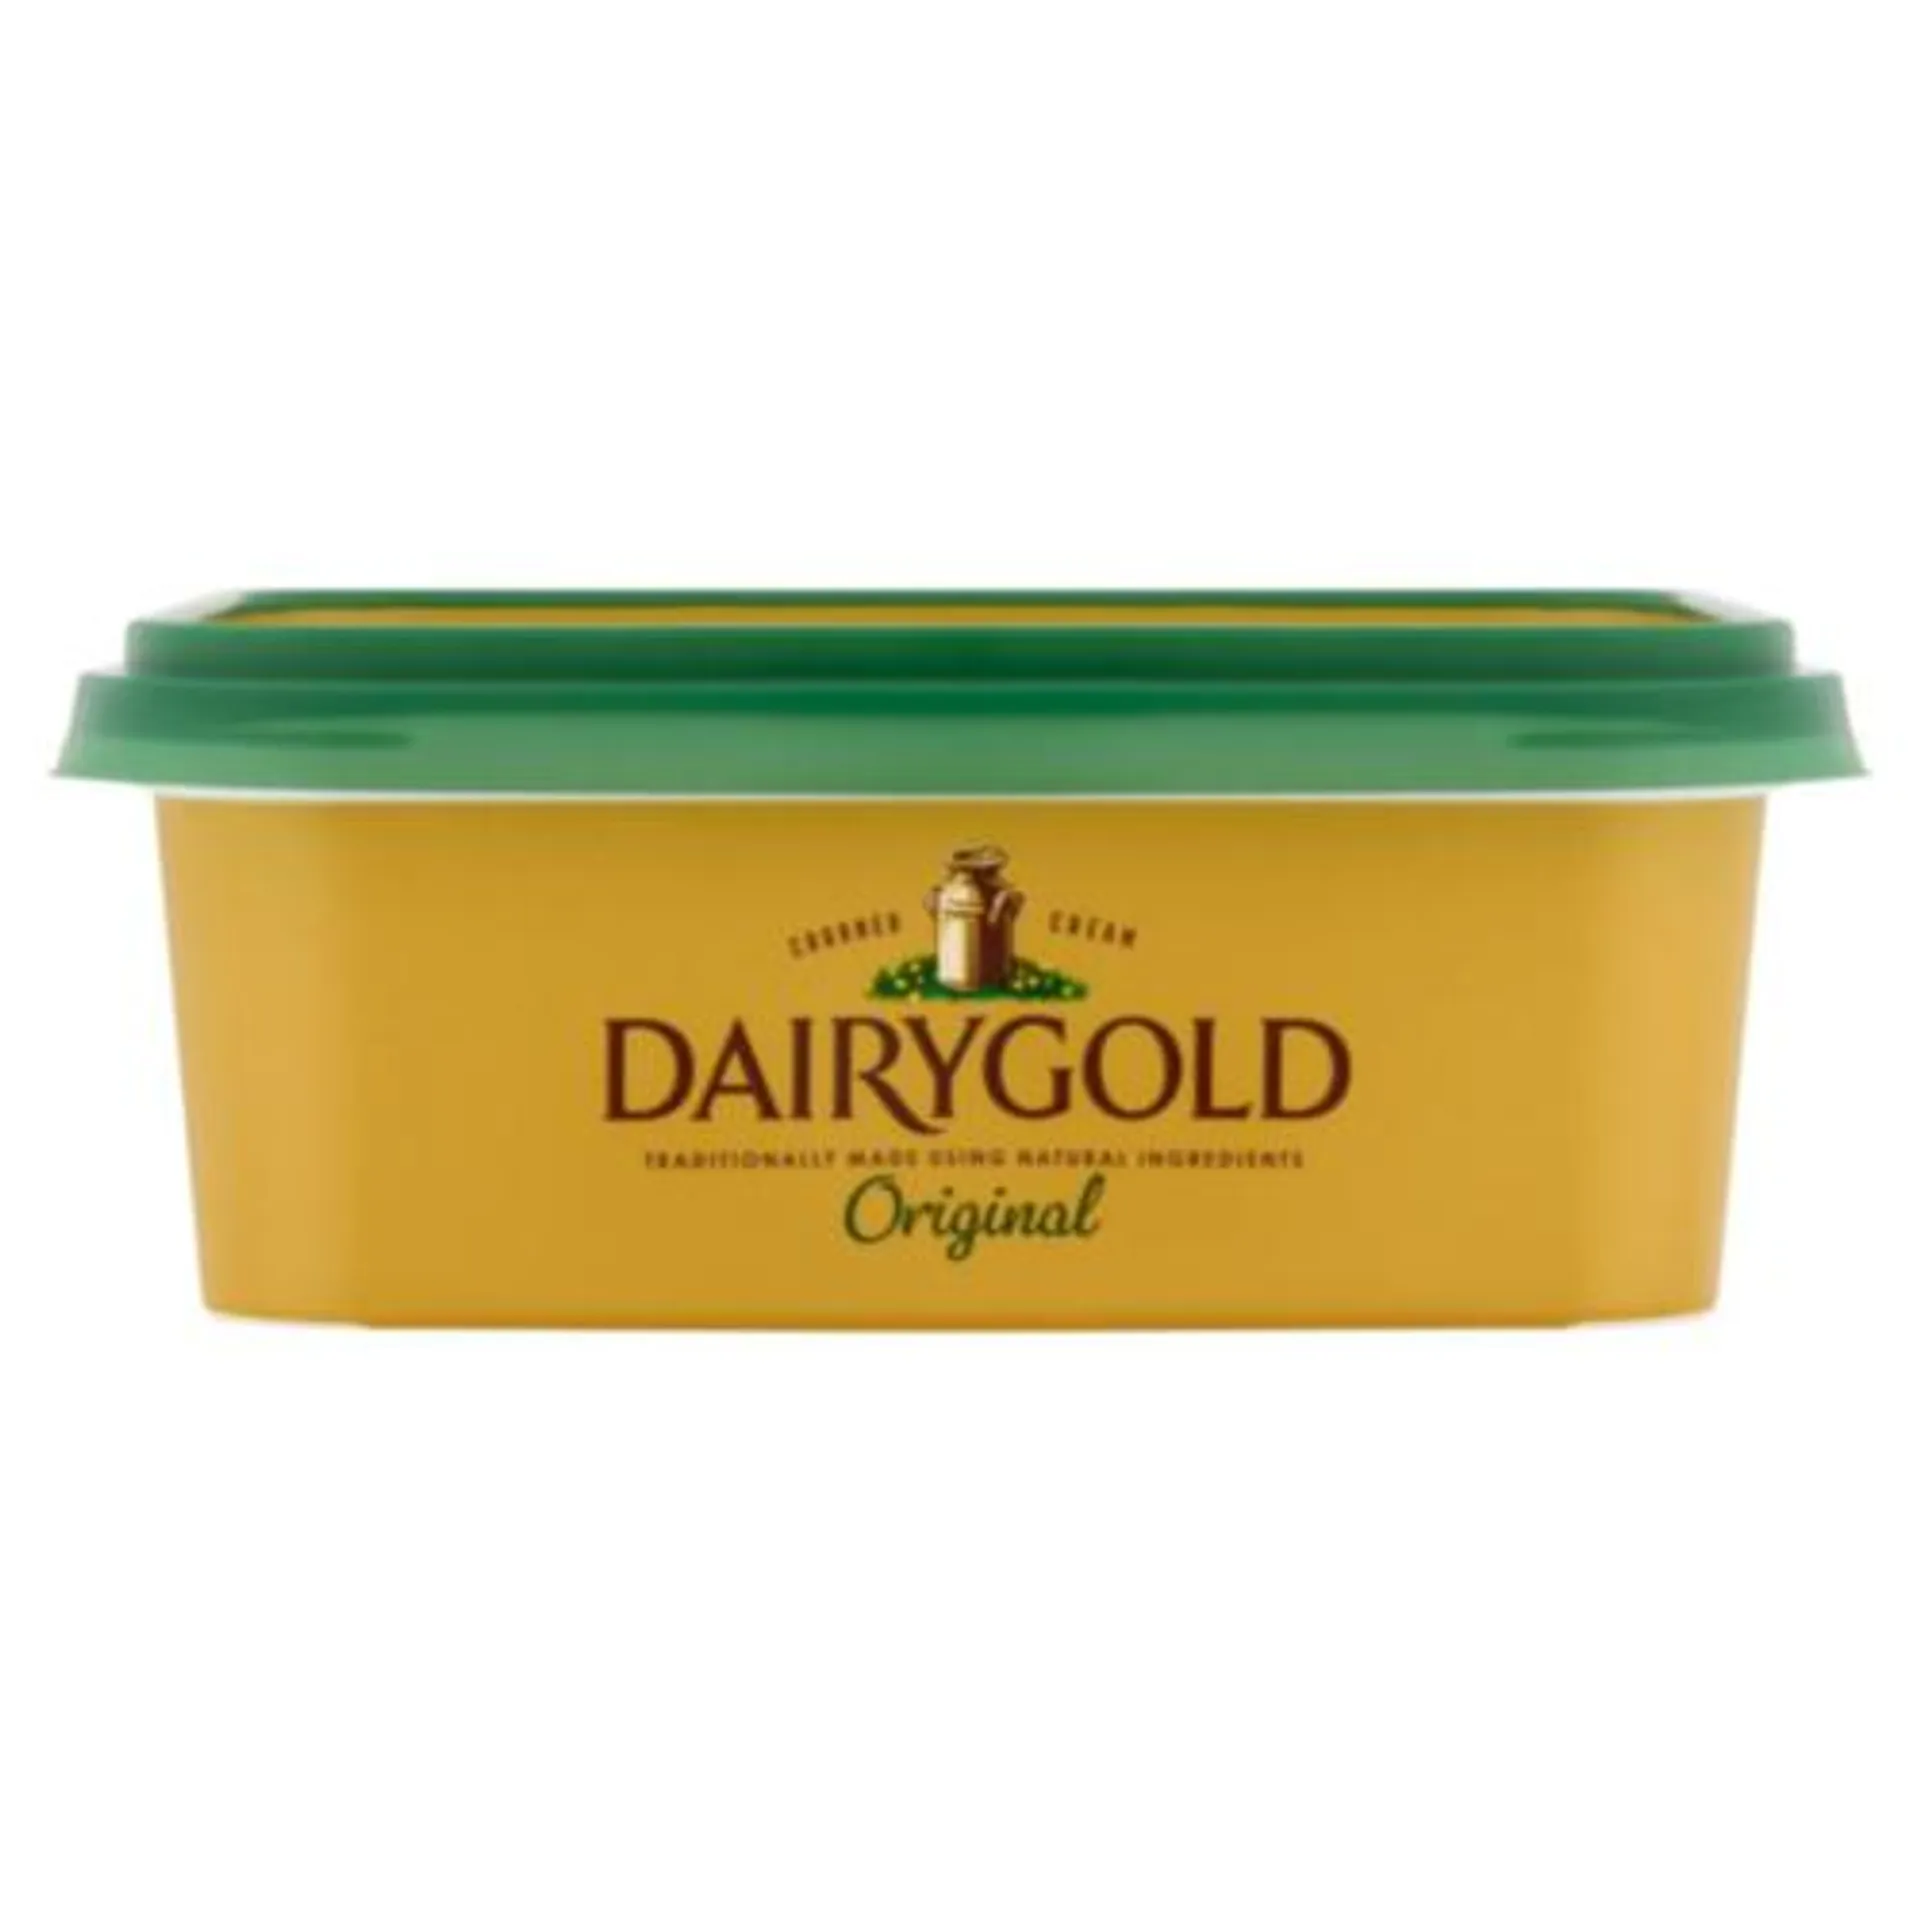 Dairygold Original